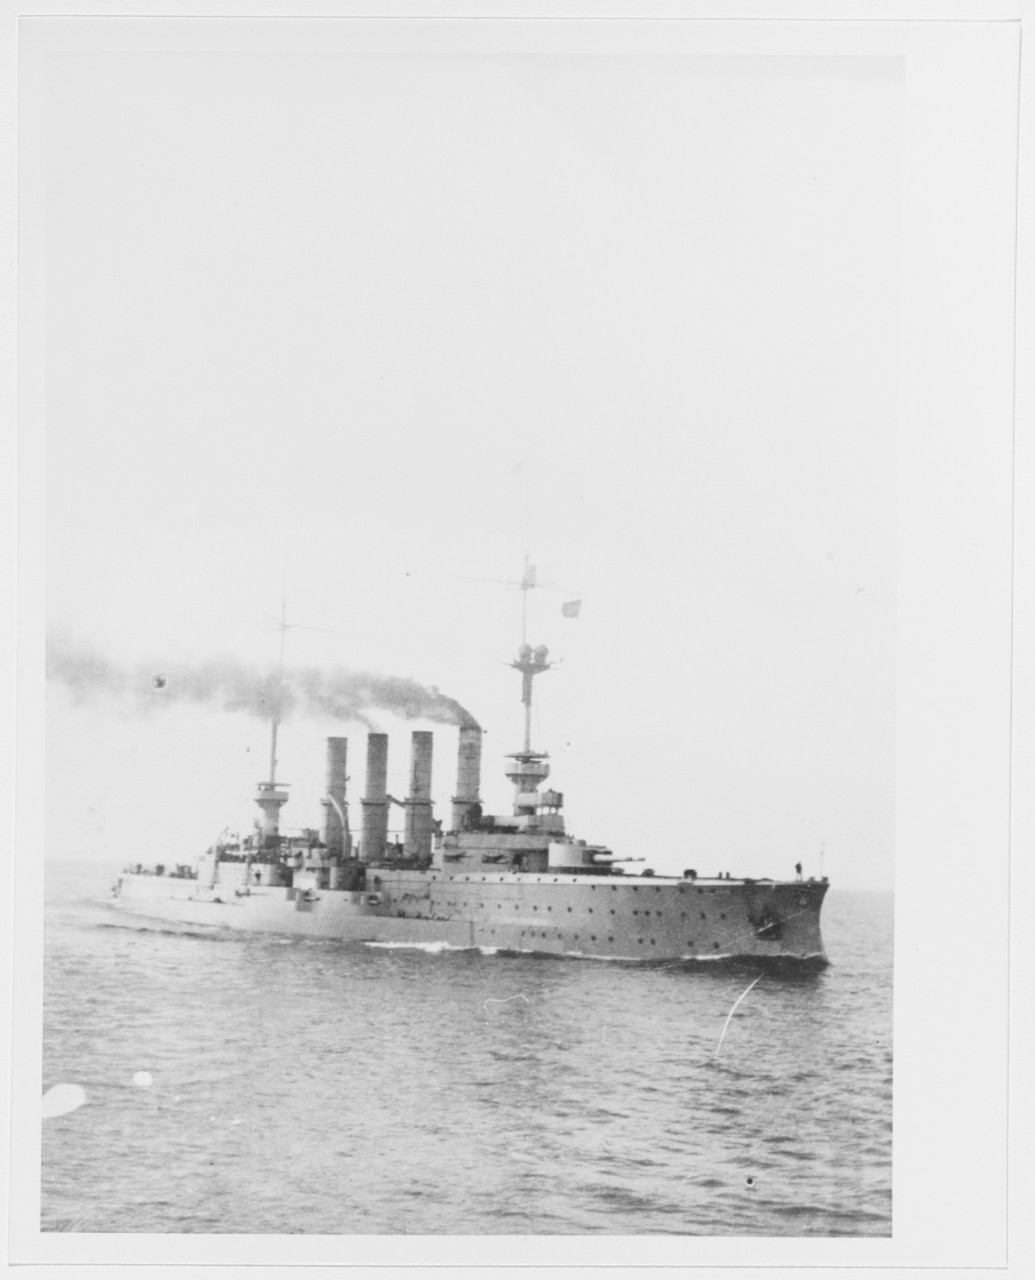 YORCK (German armored cruiser, 1904-1914)